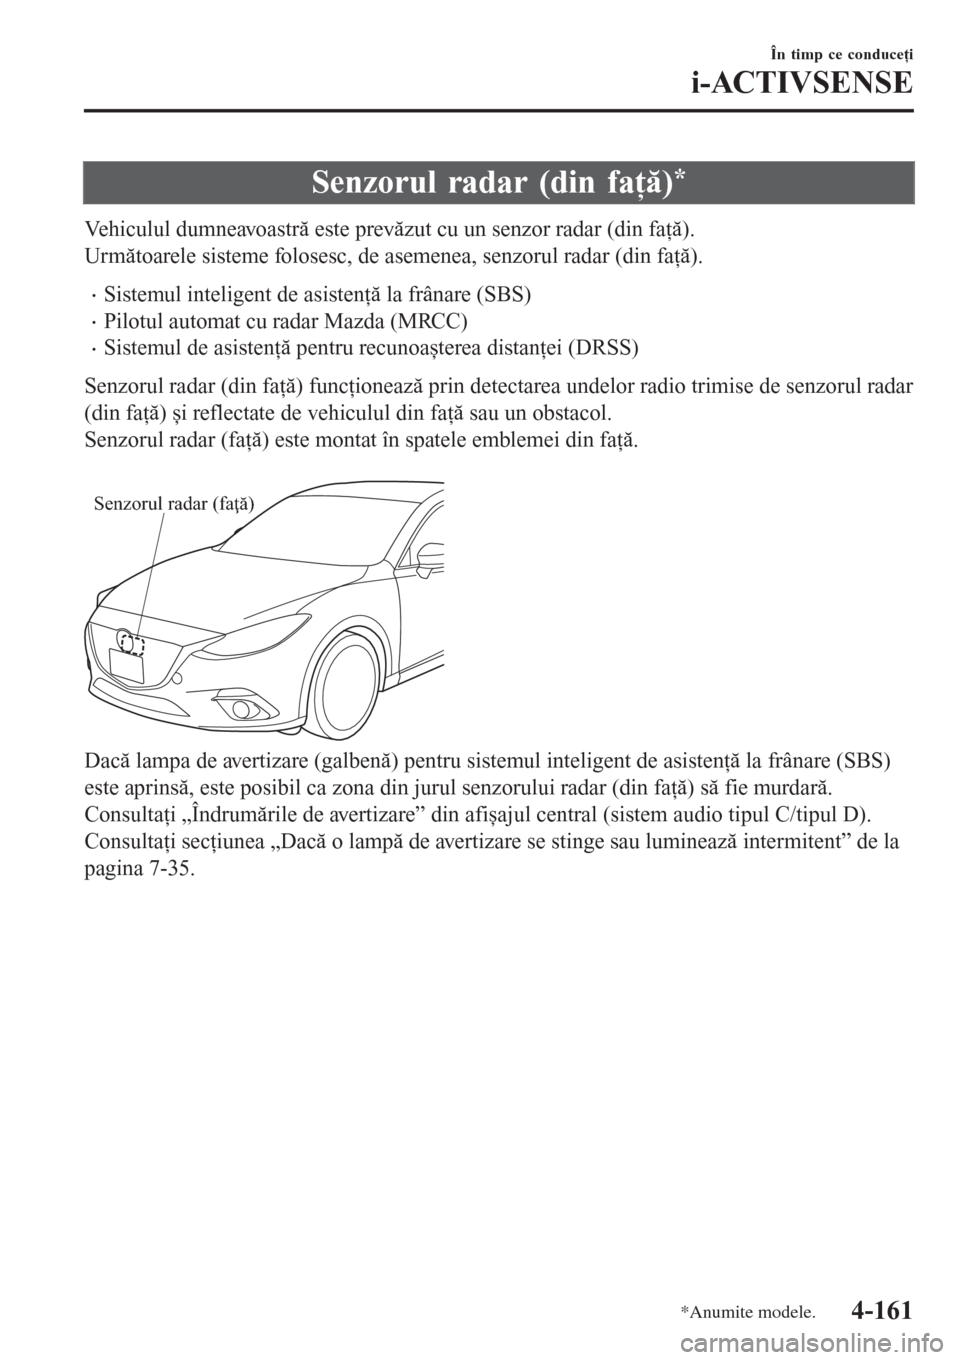 MAZDA MODEL 3 HATCHBACK 2015  Manualul de utilizare (in Romanian) Senzorul radar (din faţă)*
Vehiculul dumneavoastră este prevăzut cu un senzor radar (din faţă).
Următoarele sisteme folosesc, de asemenea, senzorul radar (din faţă).
•Sistemul inteligent de